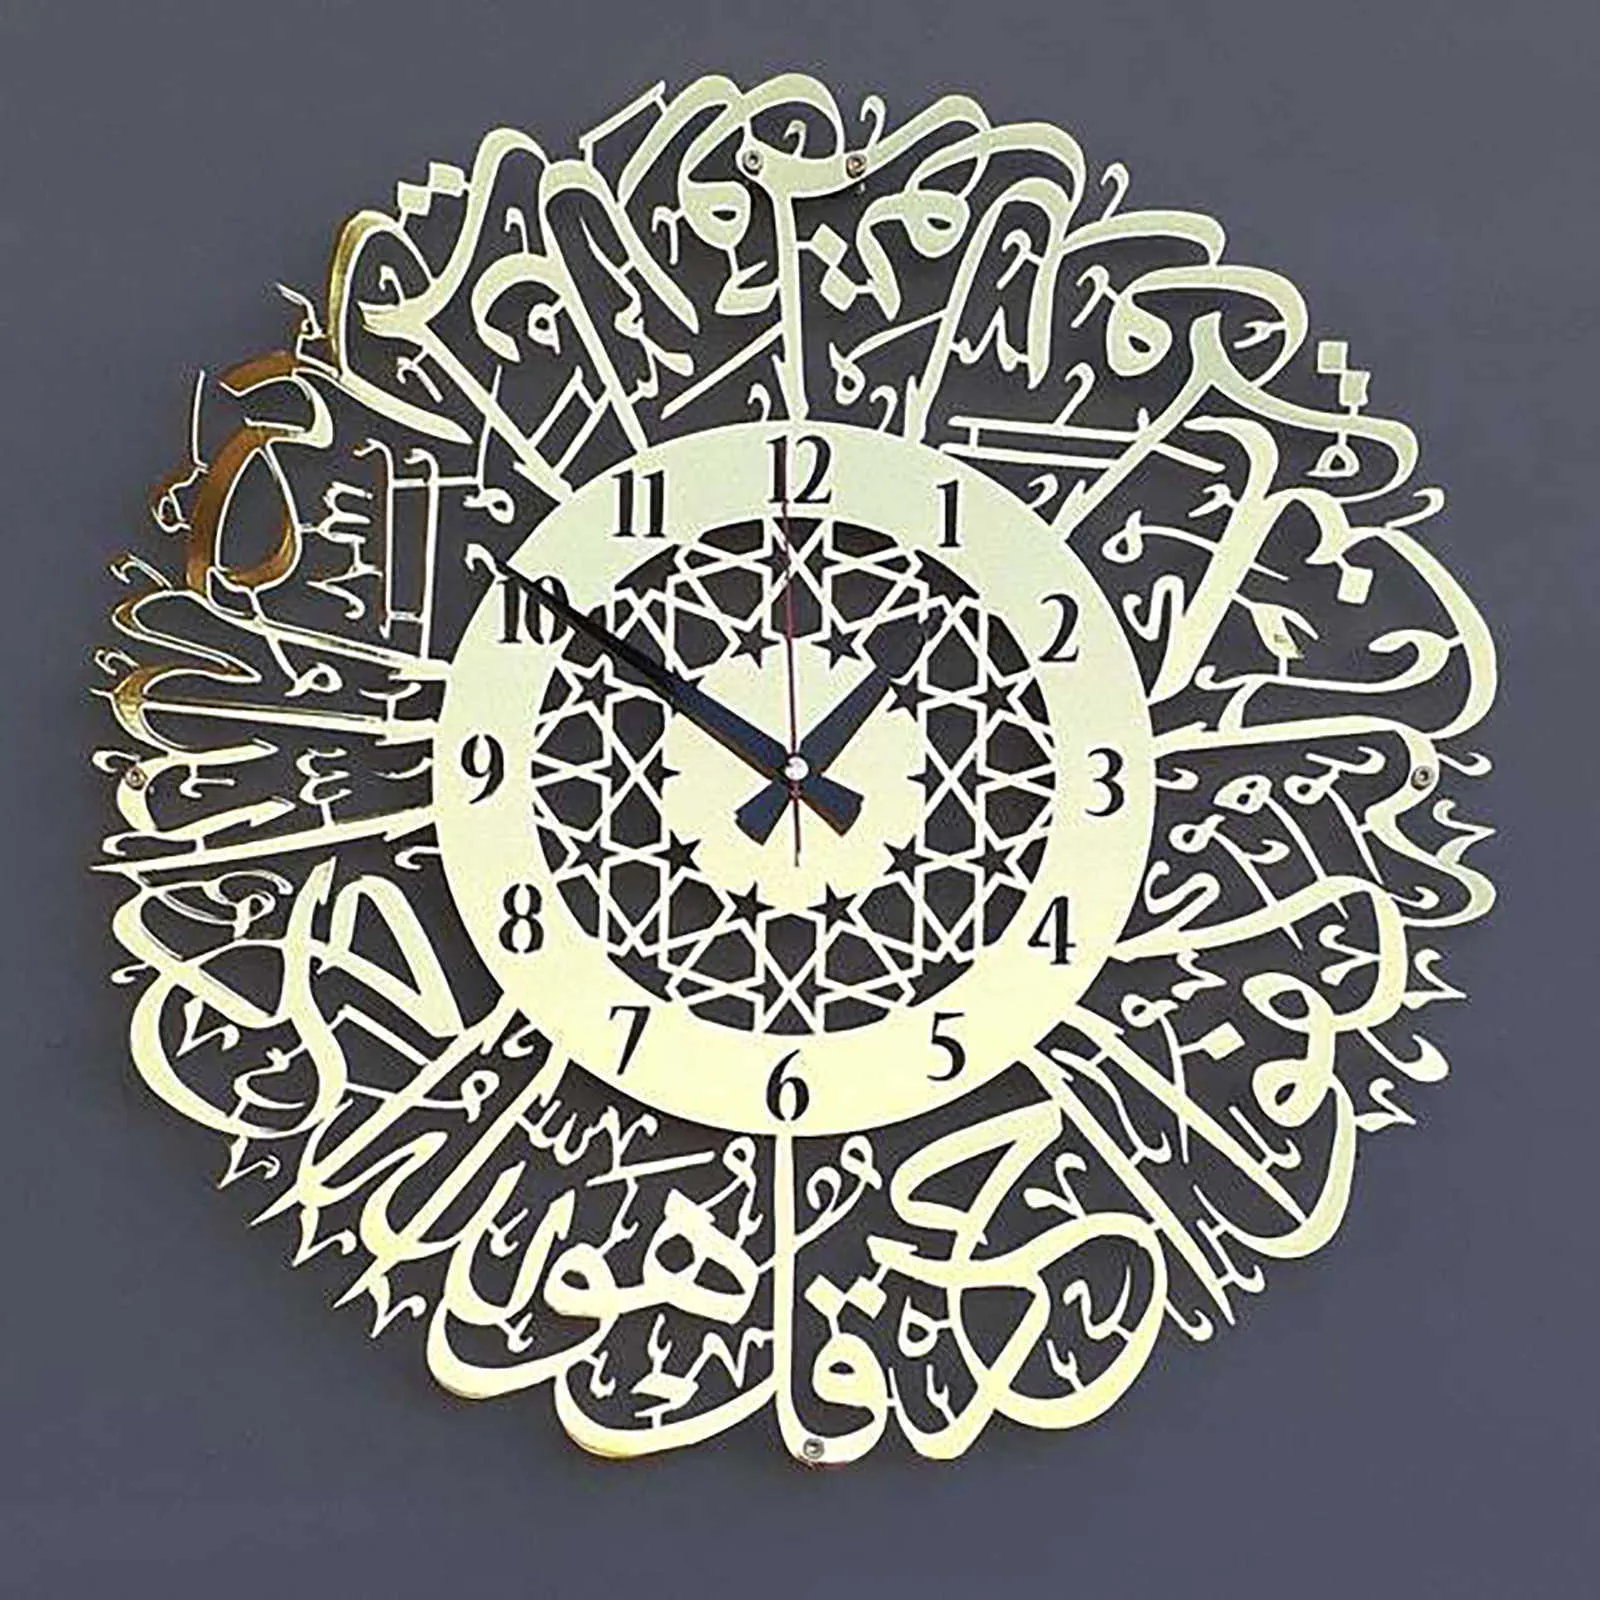 Akrylowy Islamski Luksusowy Zegar Ścienny Sura Al Ikhlas 3D Zegar ścienny Islamski Kaligrafia Islamskie Prezenty Eid Prezent Ramadan Home Decorat 210930